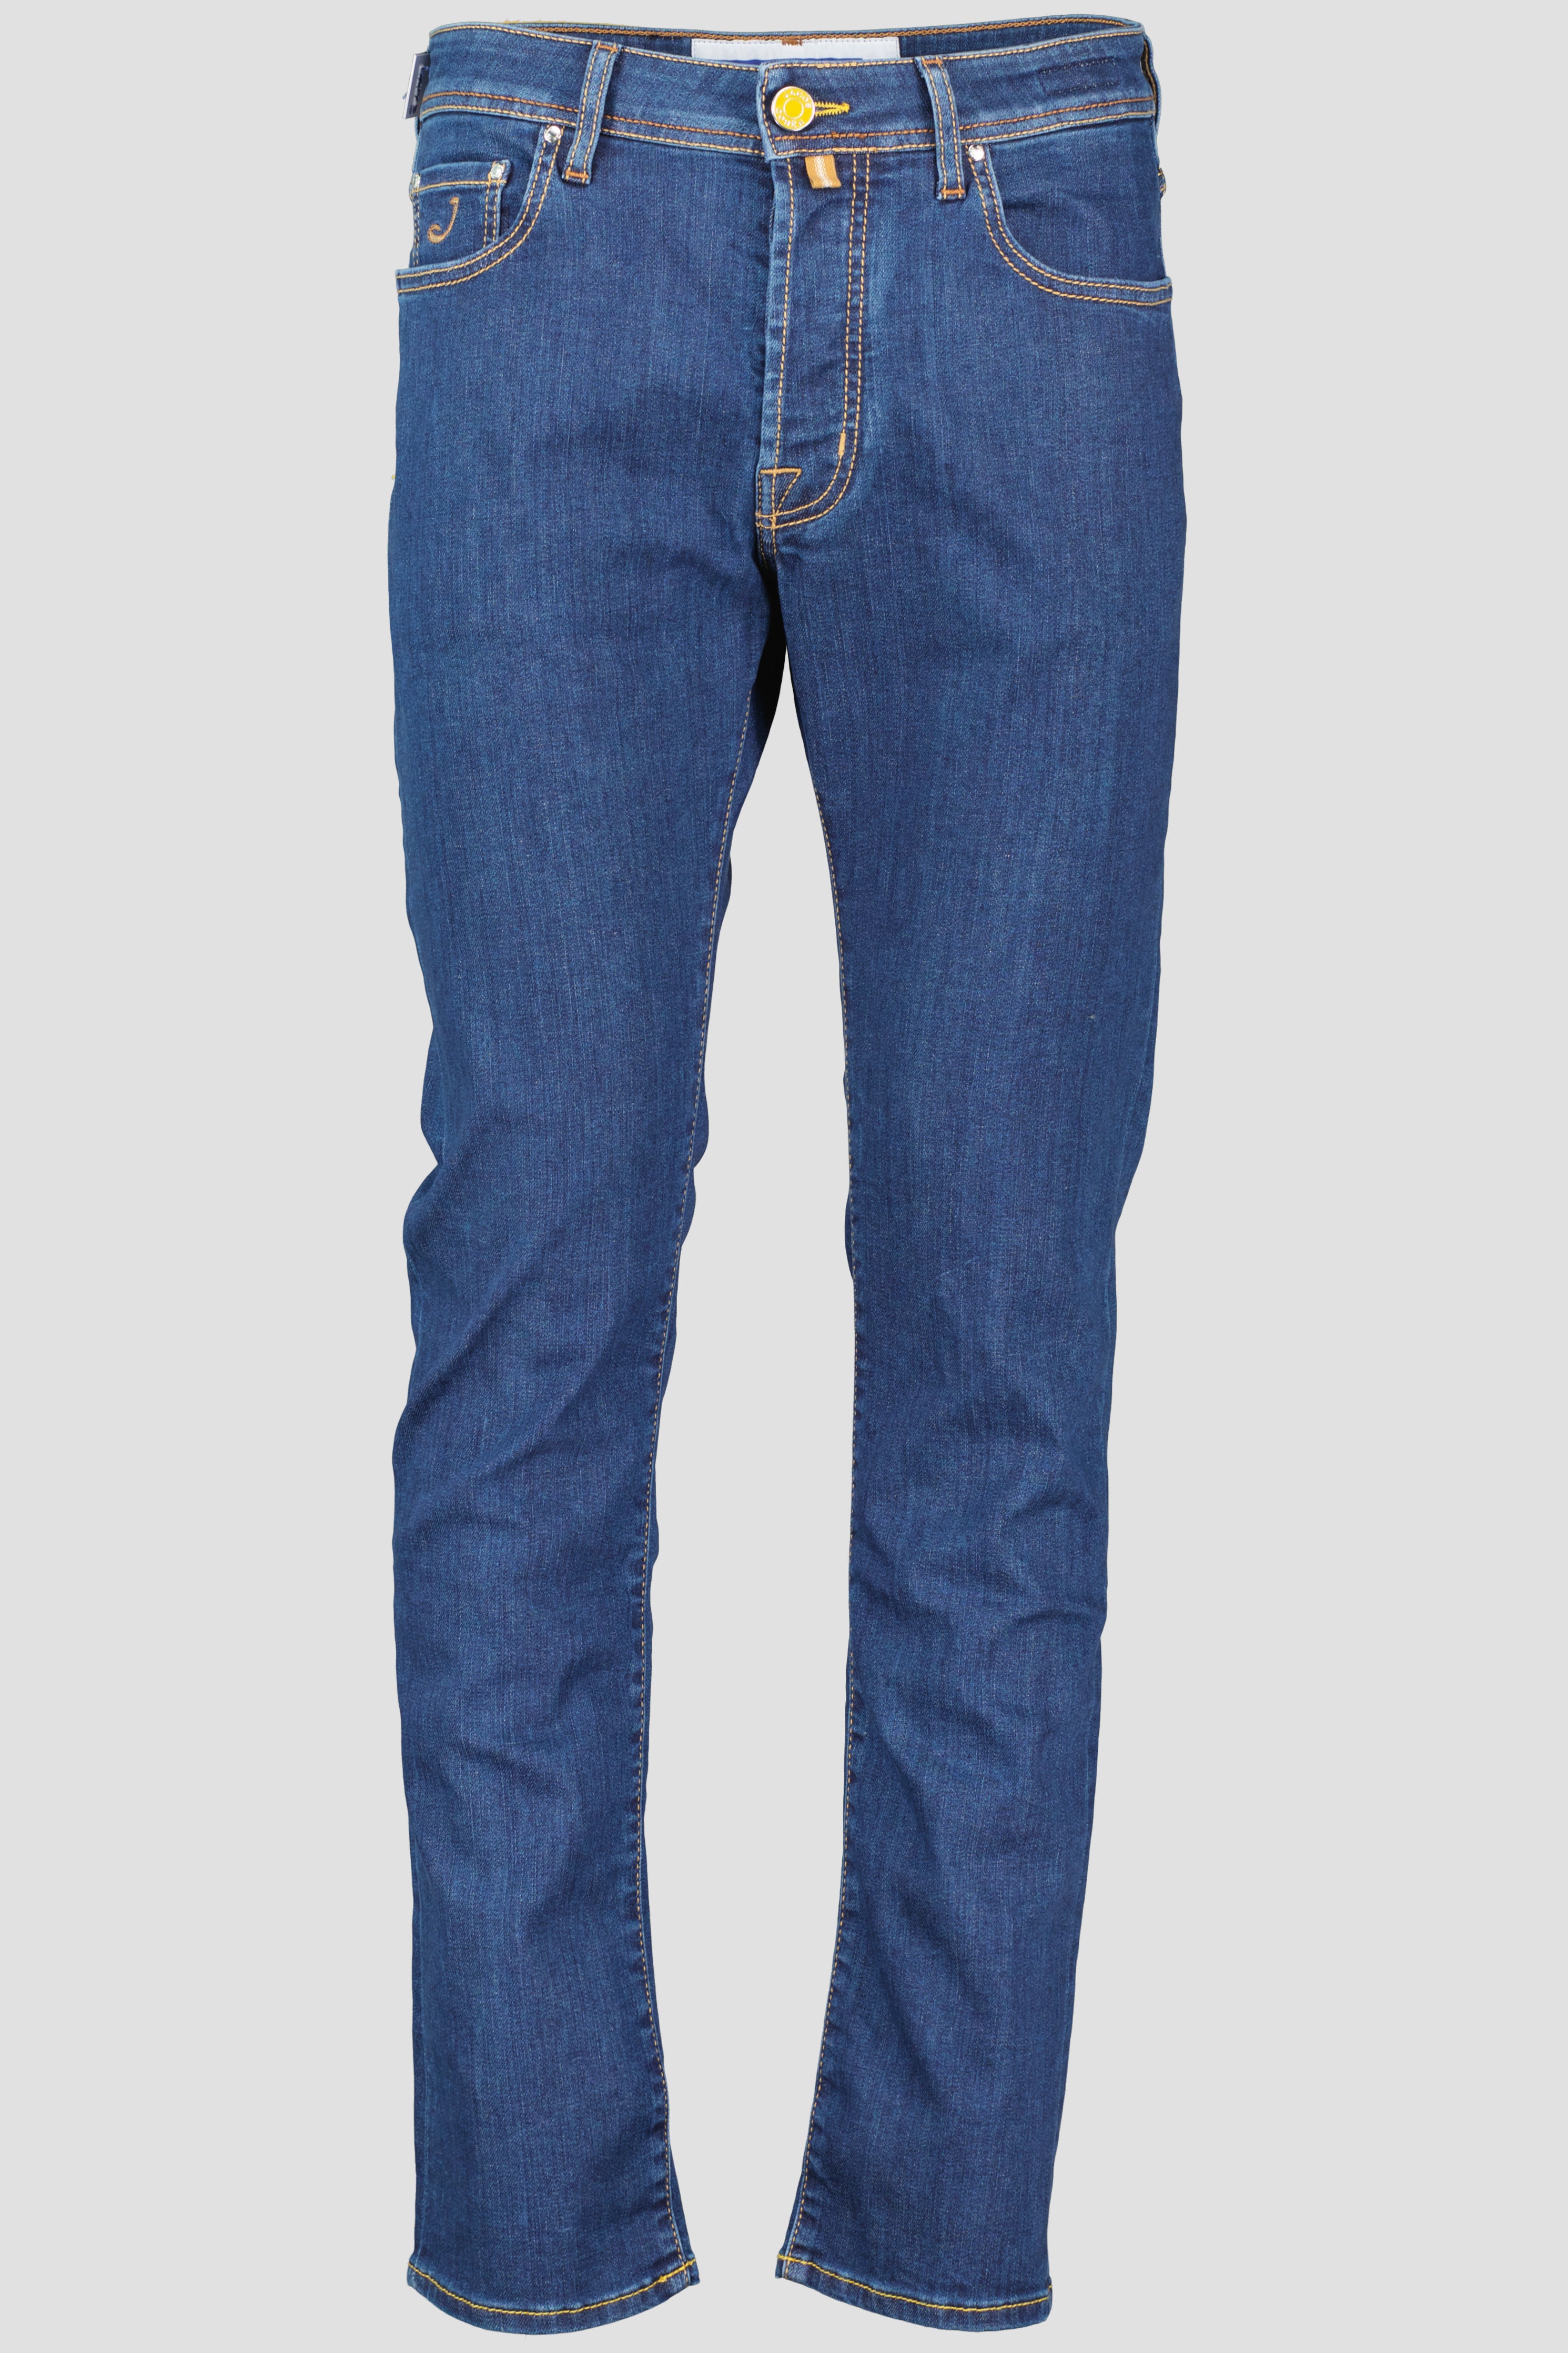 Men's Jacob Cohen Navy Bard Slim Fit Jeans